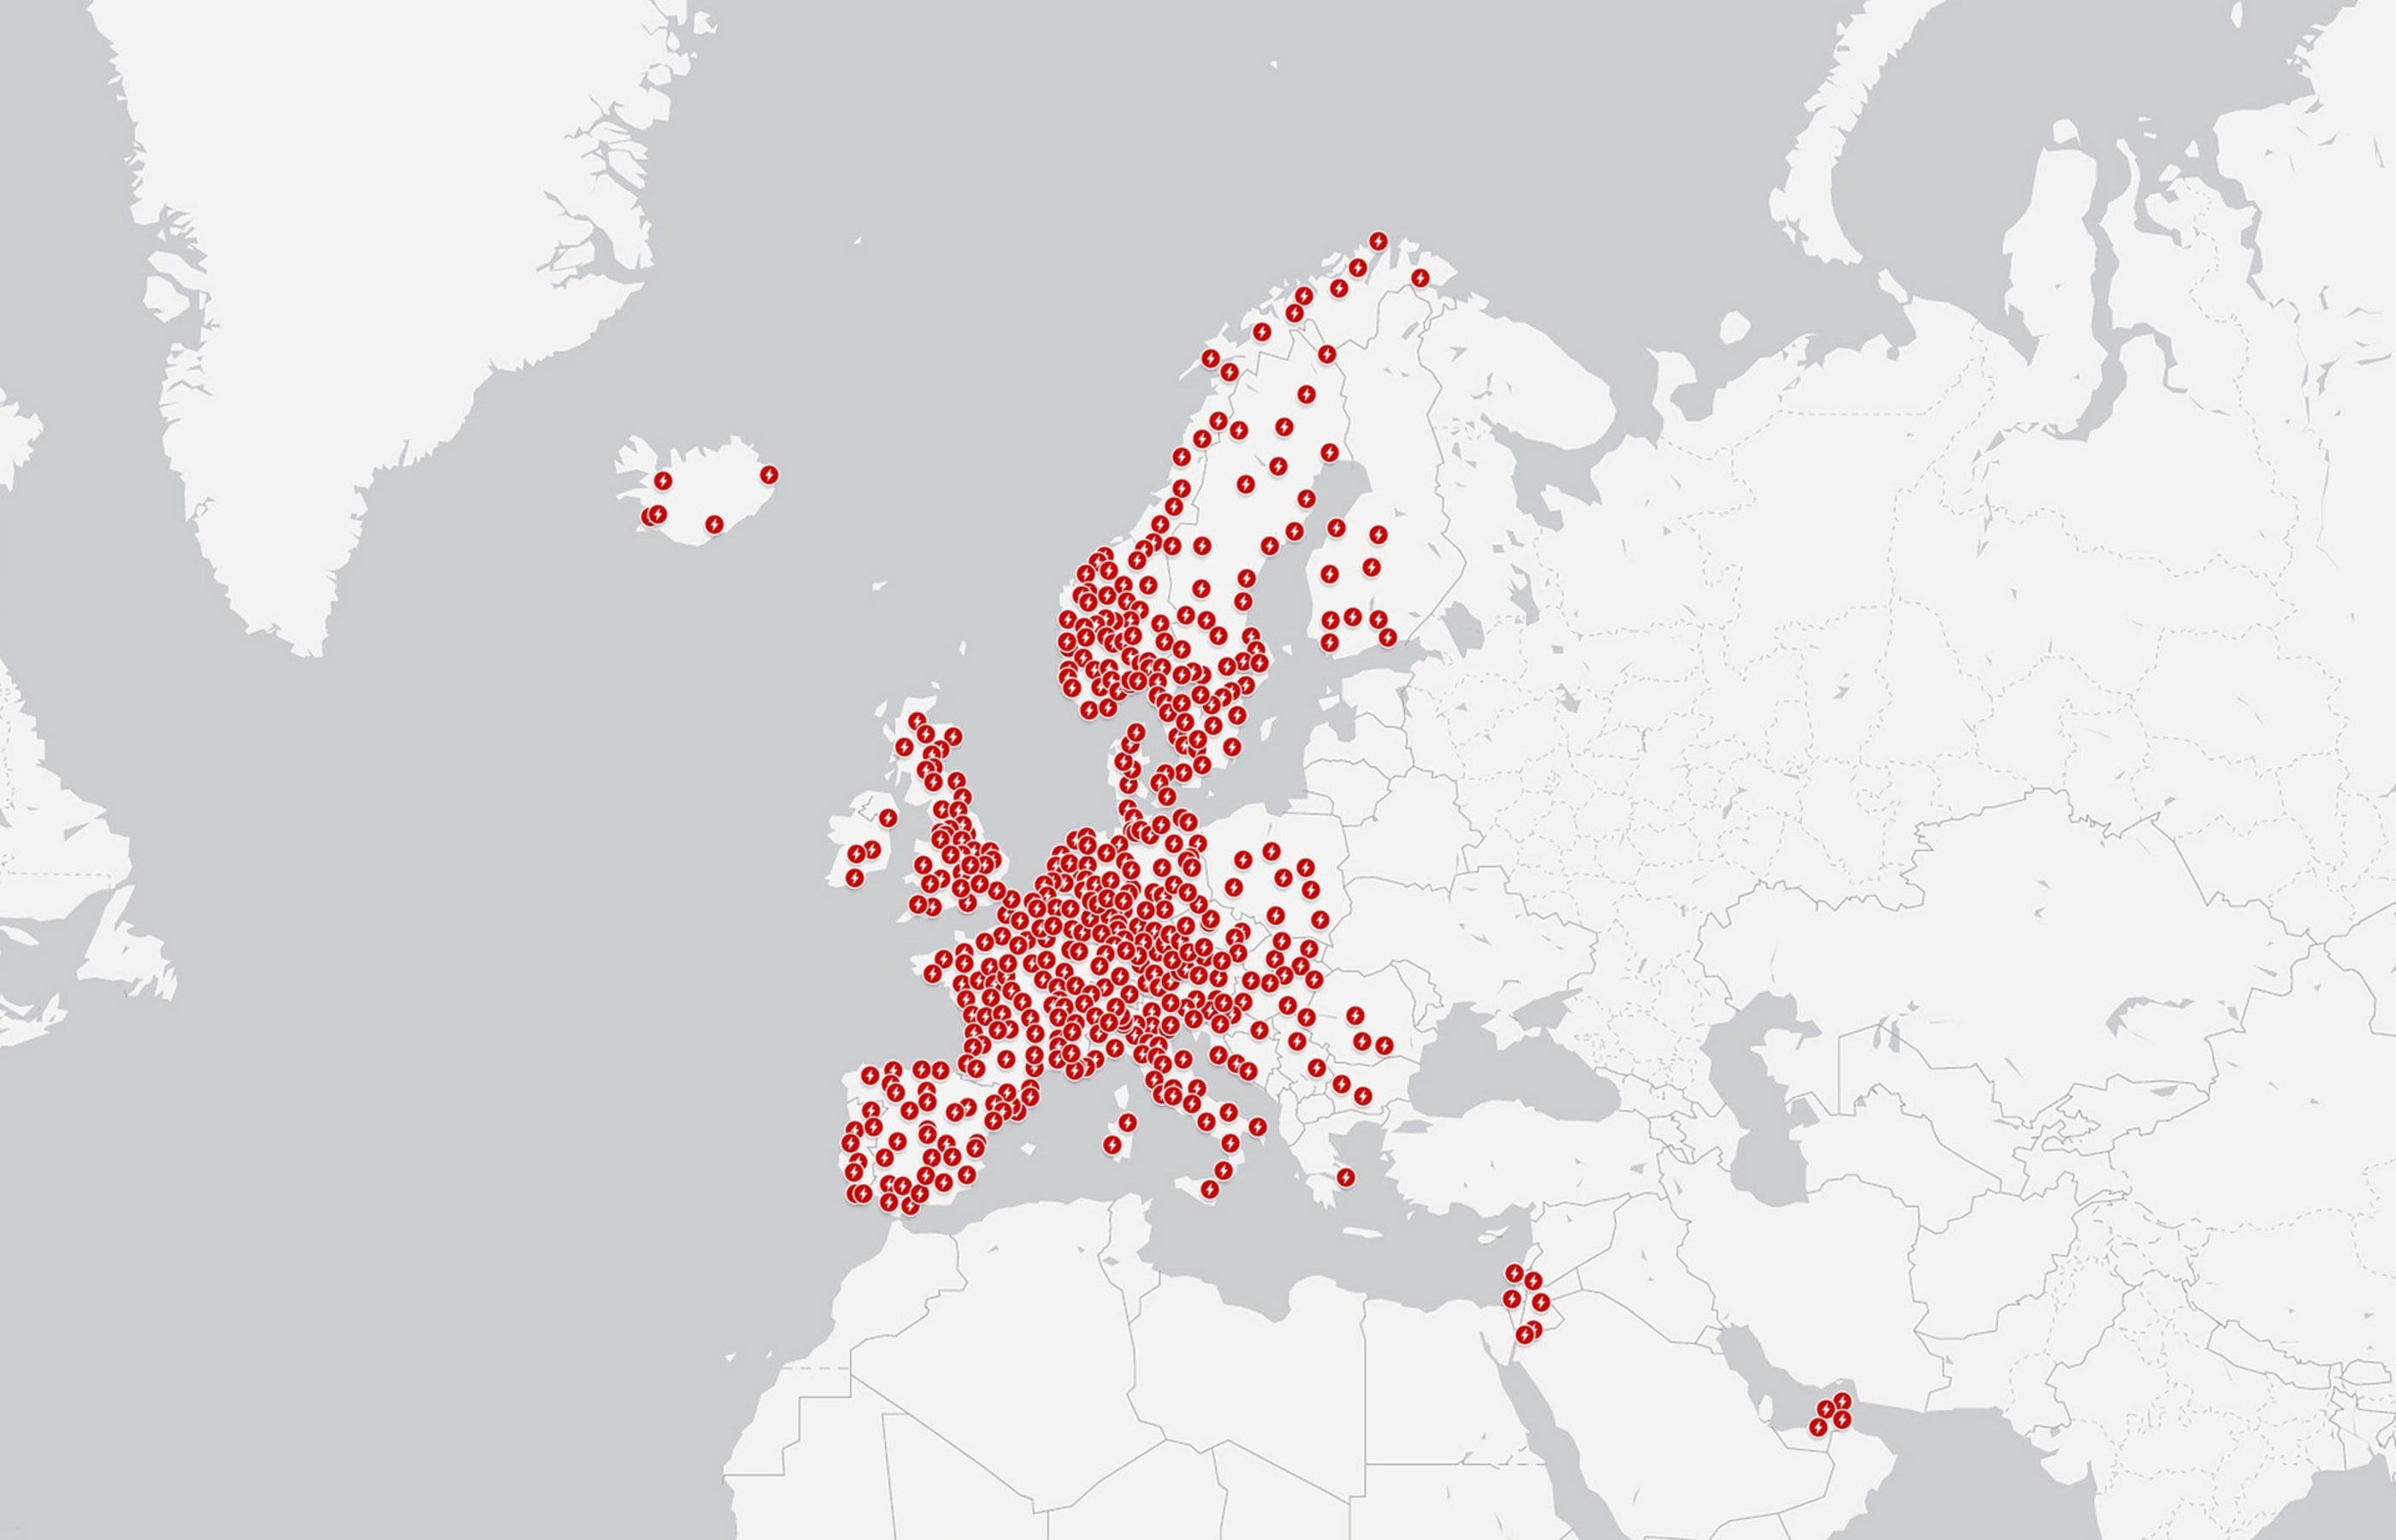 Mapa ładowarek Supercharger w Europie i na Bliskim Wschodzie